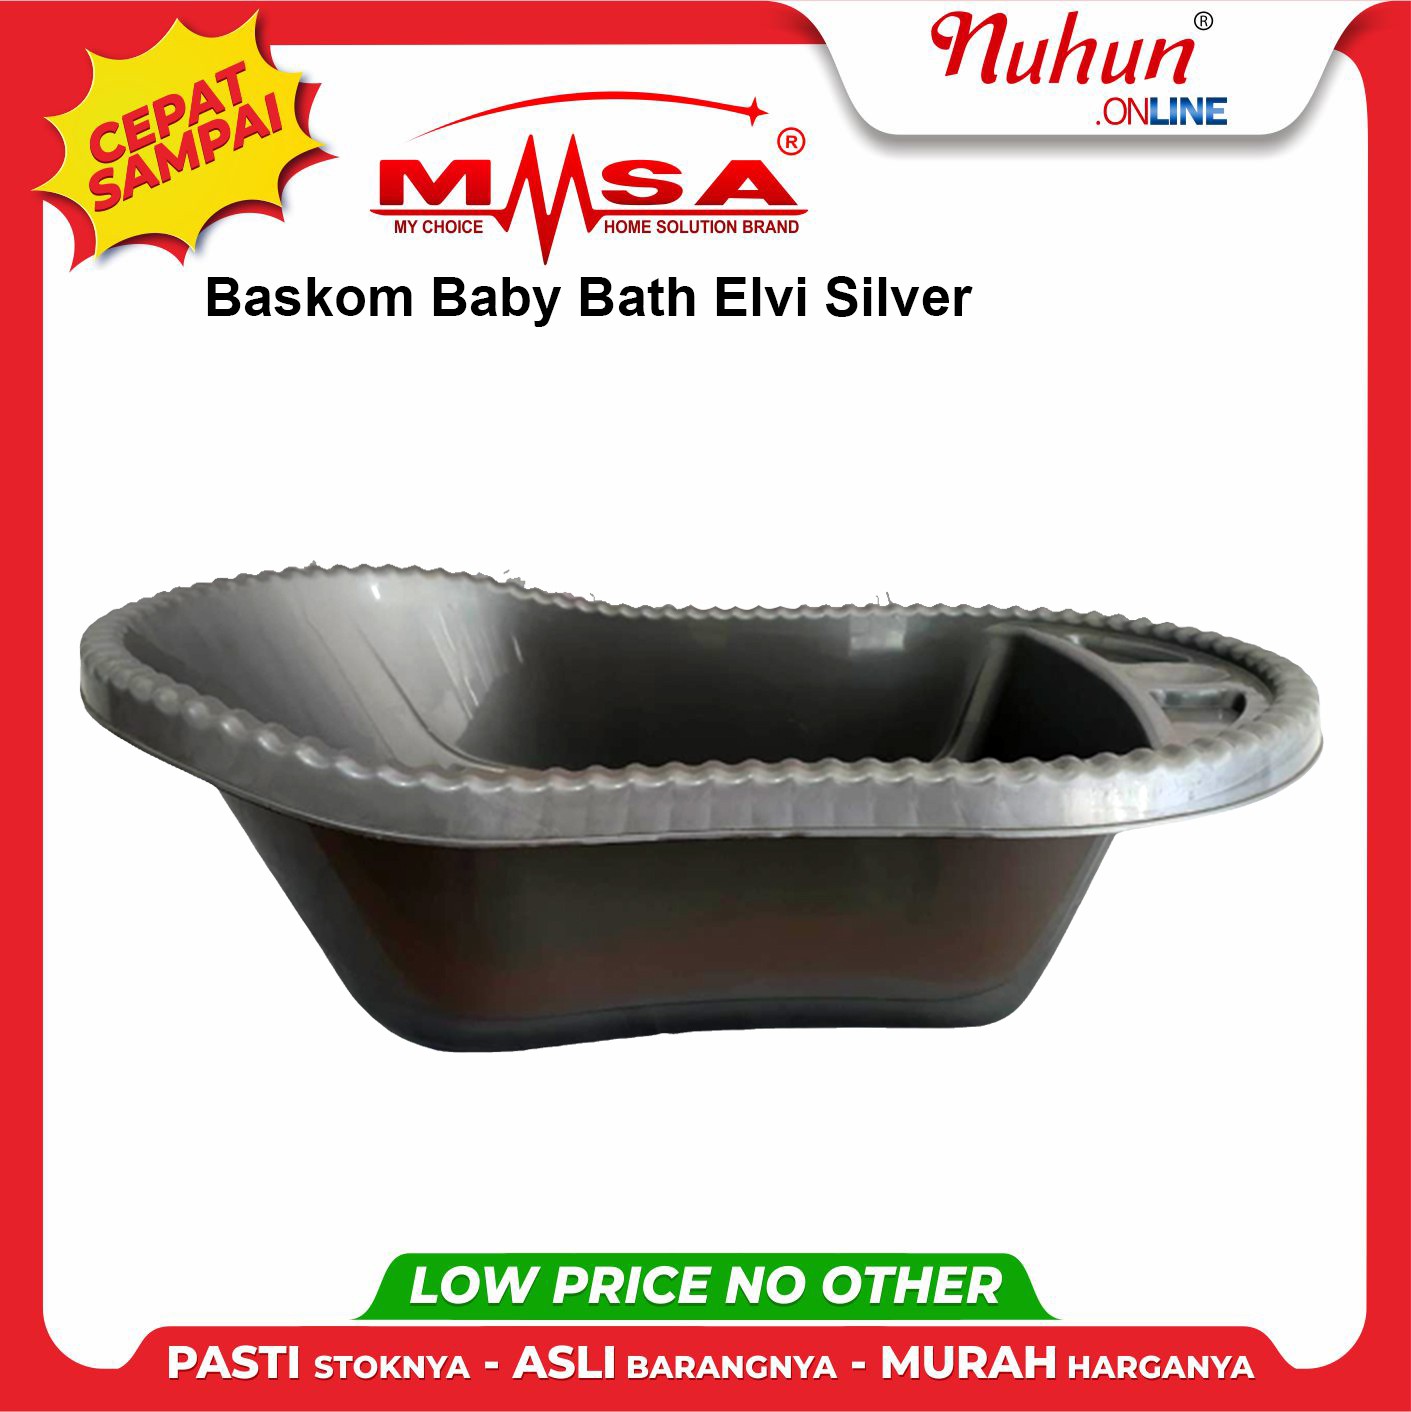 Baskom Baby Bath Elvi Silver